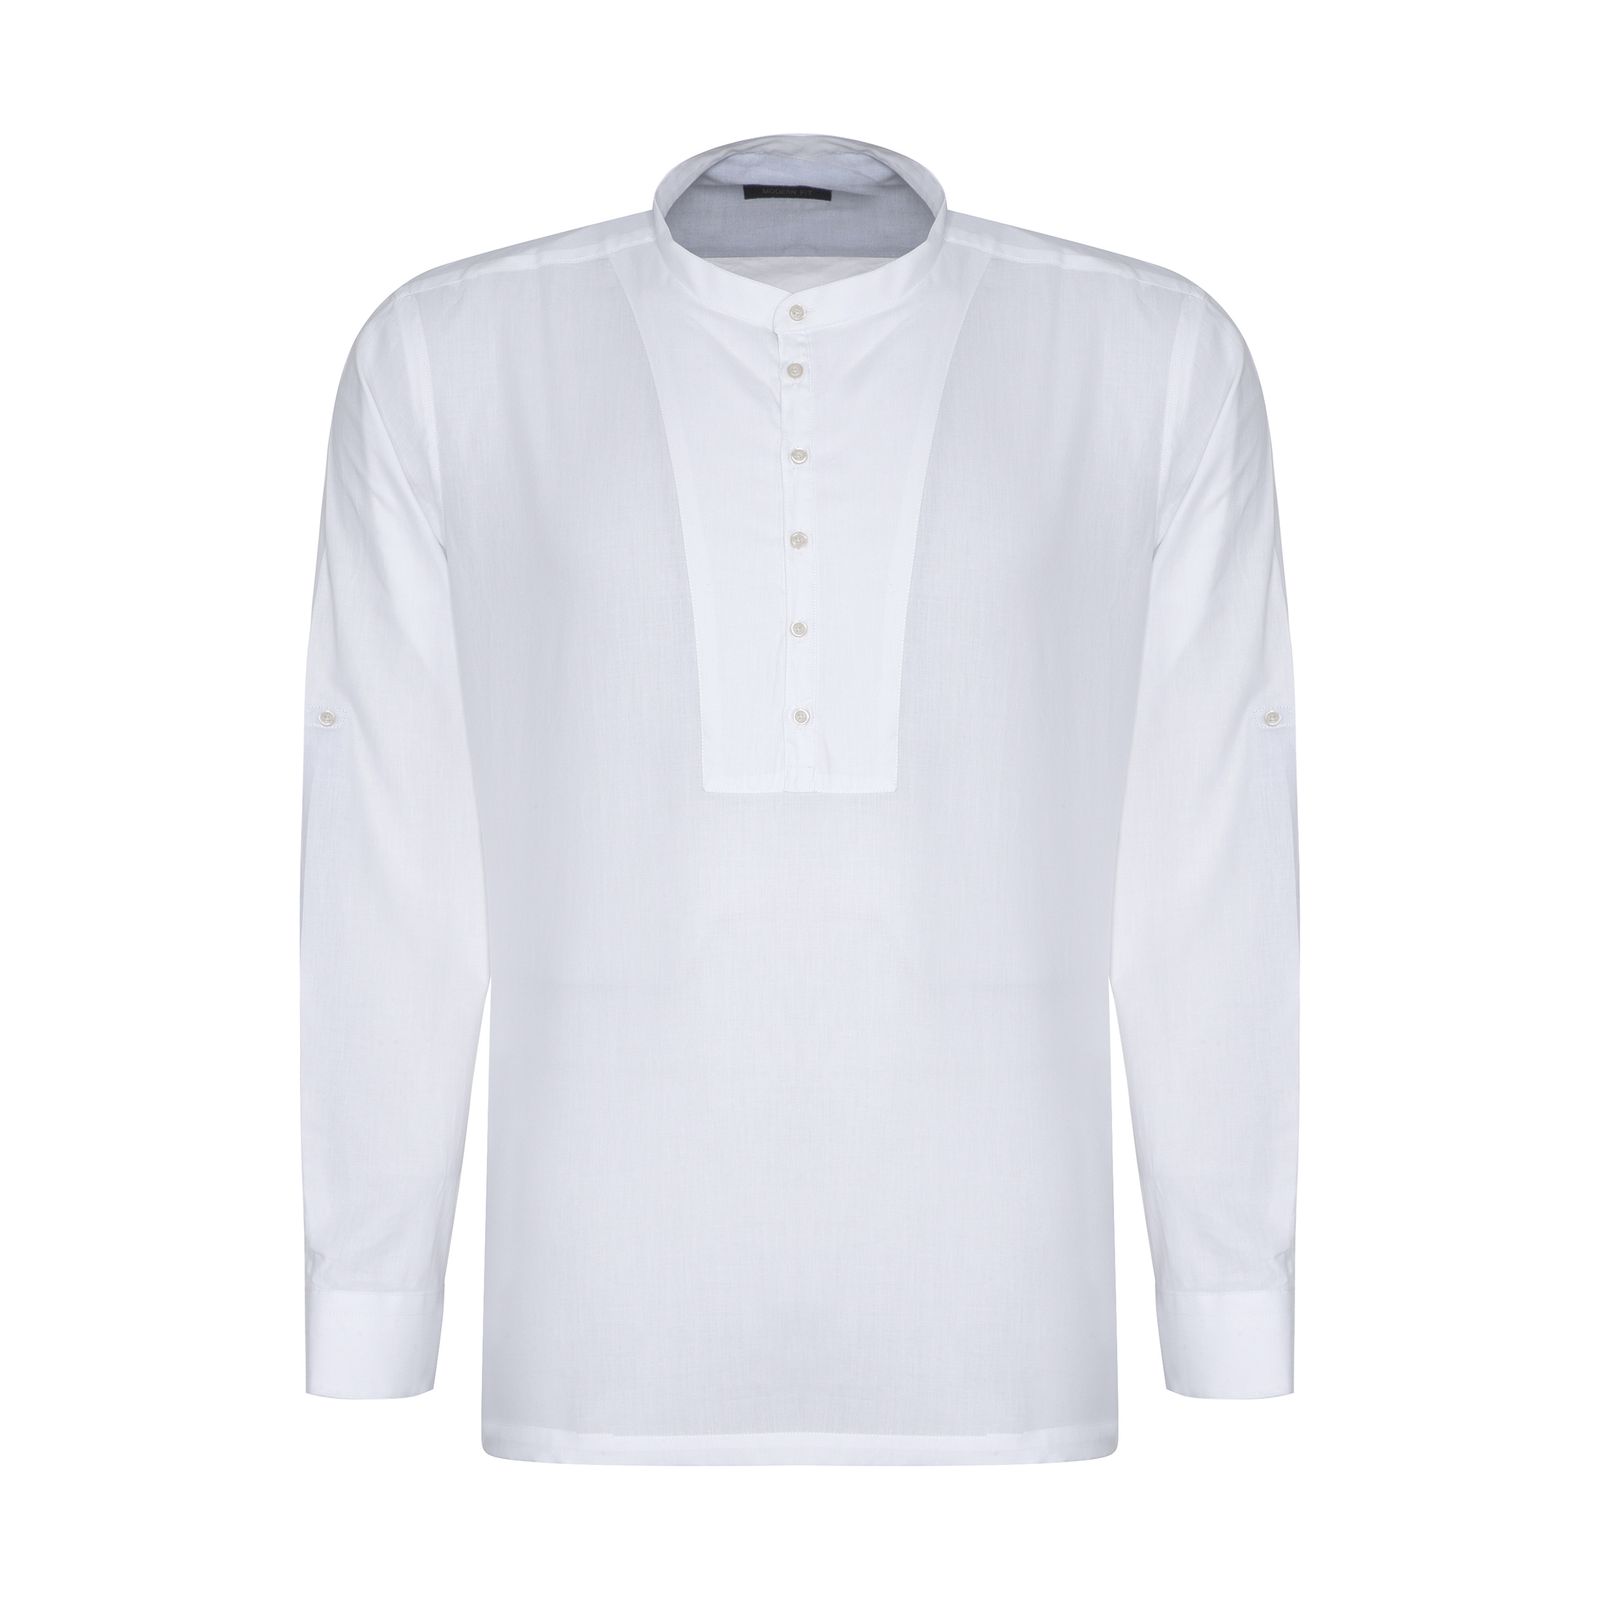 پیراهن آستین بلند مردانه ایکات مدل PST1152419 رنگ سفید -  - 1